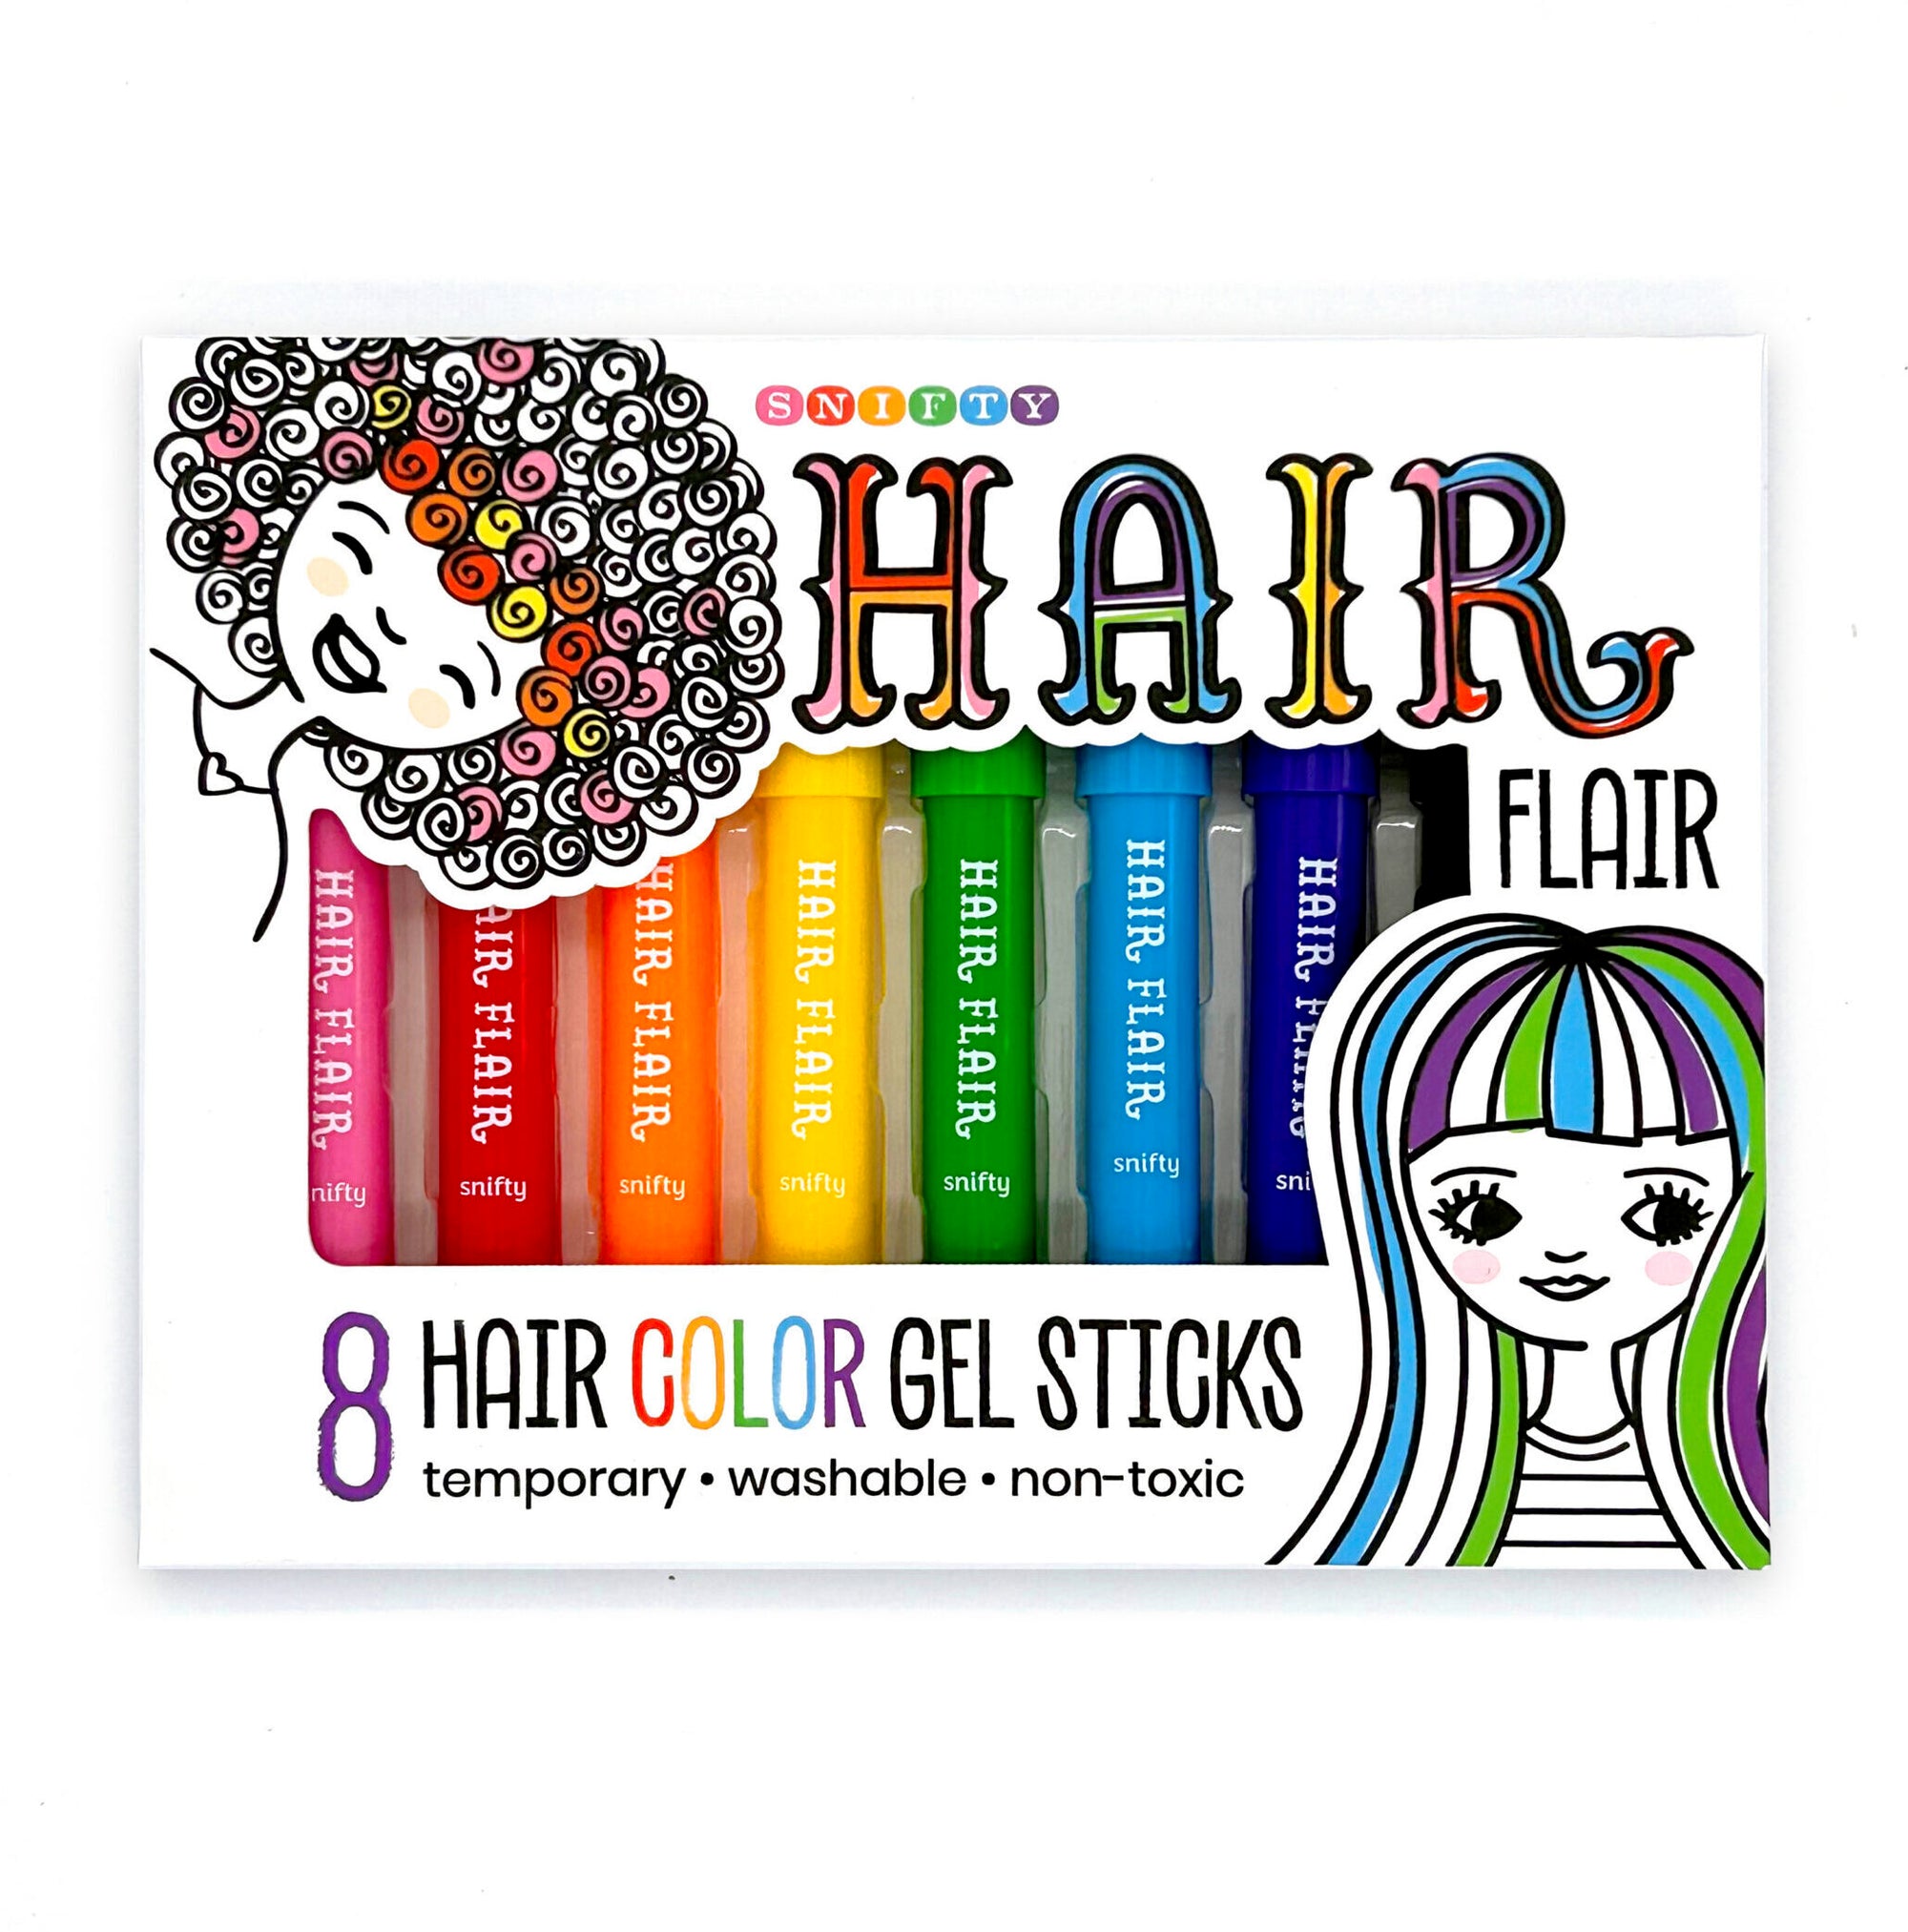 Snifty Hair Flair Color Gel Sticks